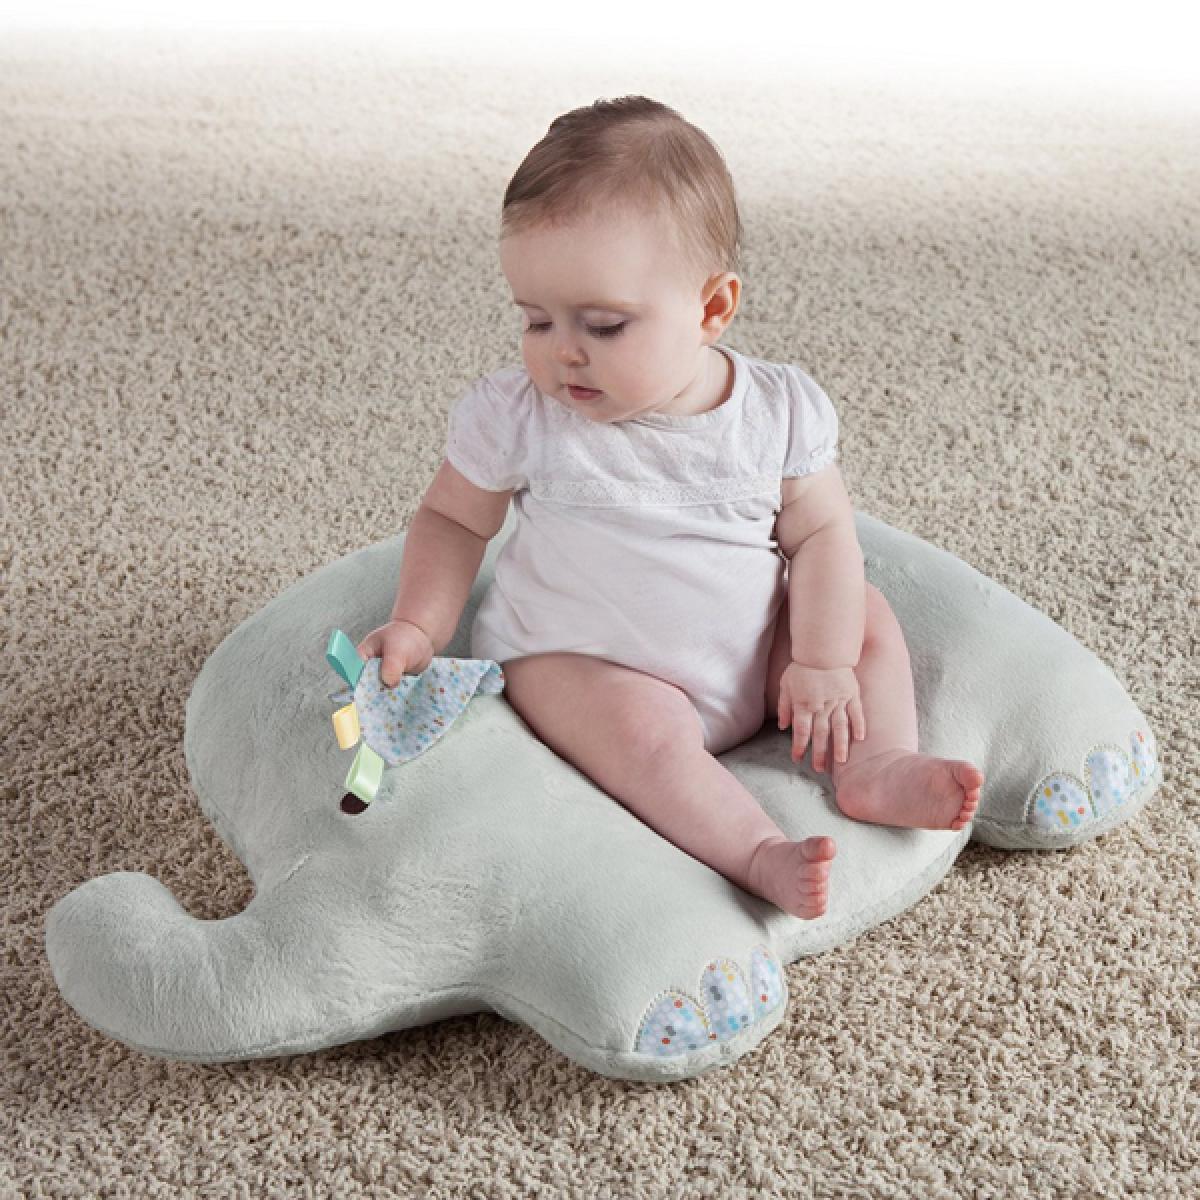 Poziciner za bebe Lounge Buddies Infant Positioner - In Elephant, SKU60705 